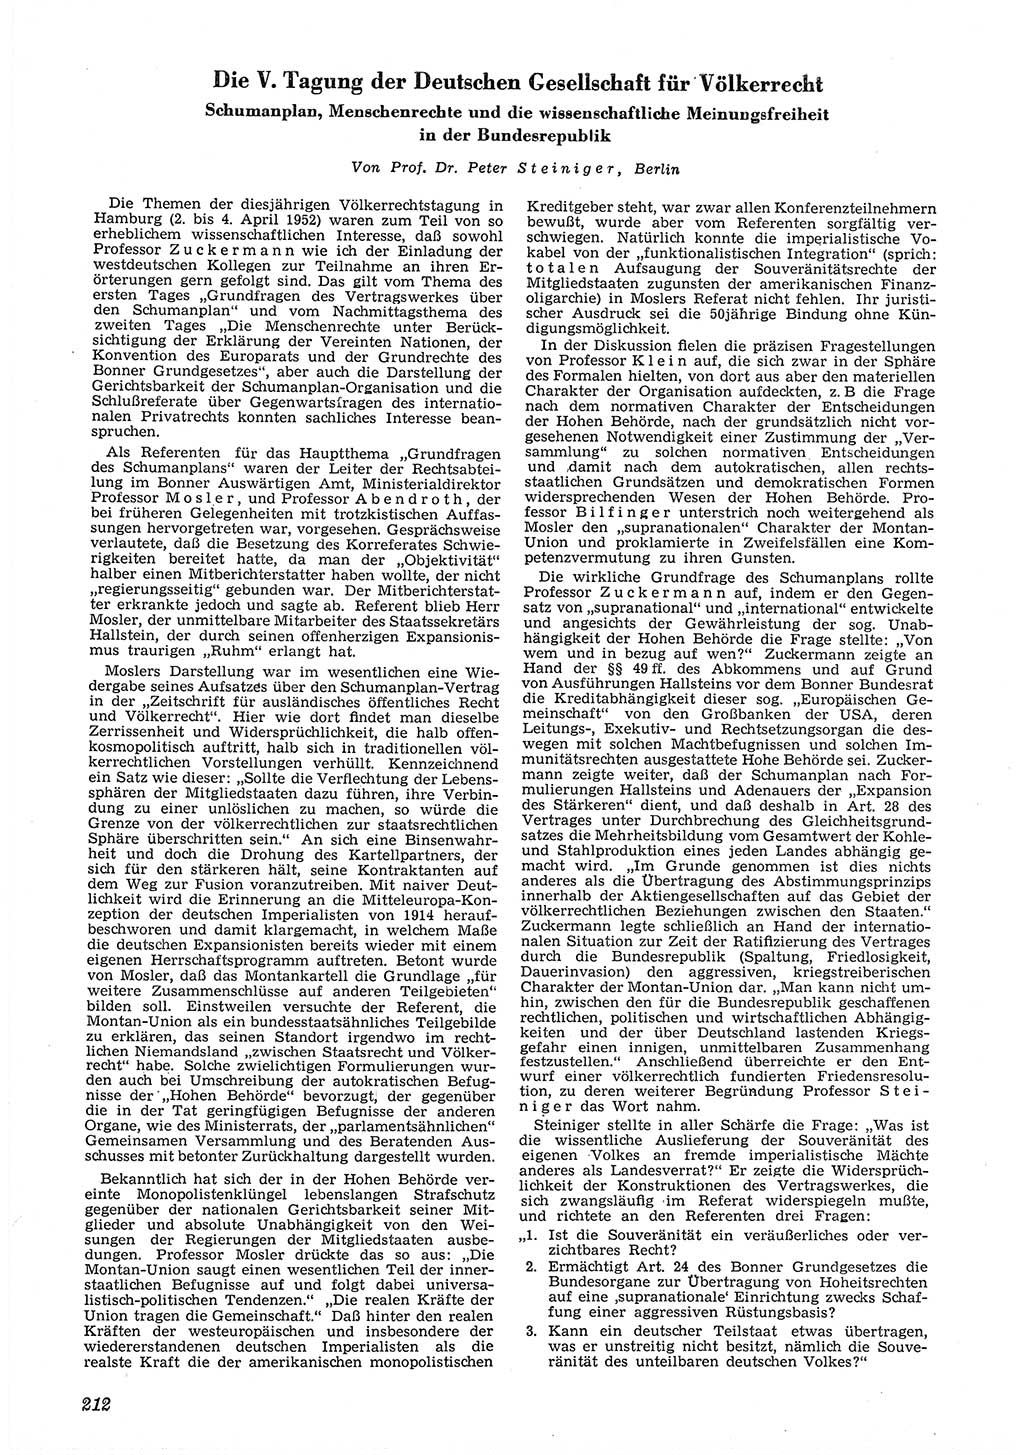 Neue Justiz (NJ), Zeitschrift für Recht und Rechtswissenschaft [Deutsche Demokratische Republik (DDR)], 6. Jahrgang 1952, Seite 212 (NJ DDR 1952, S. 212)